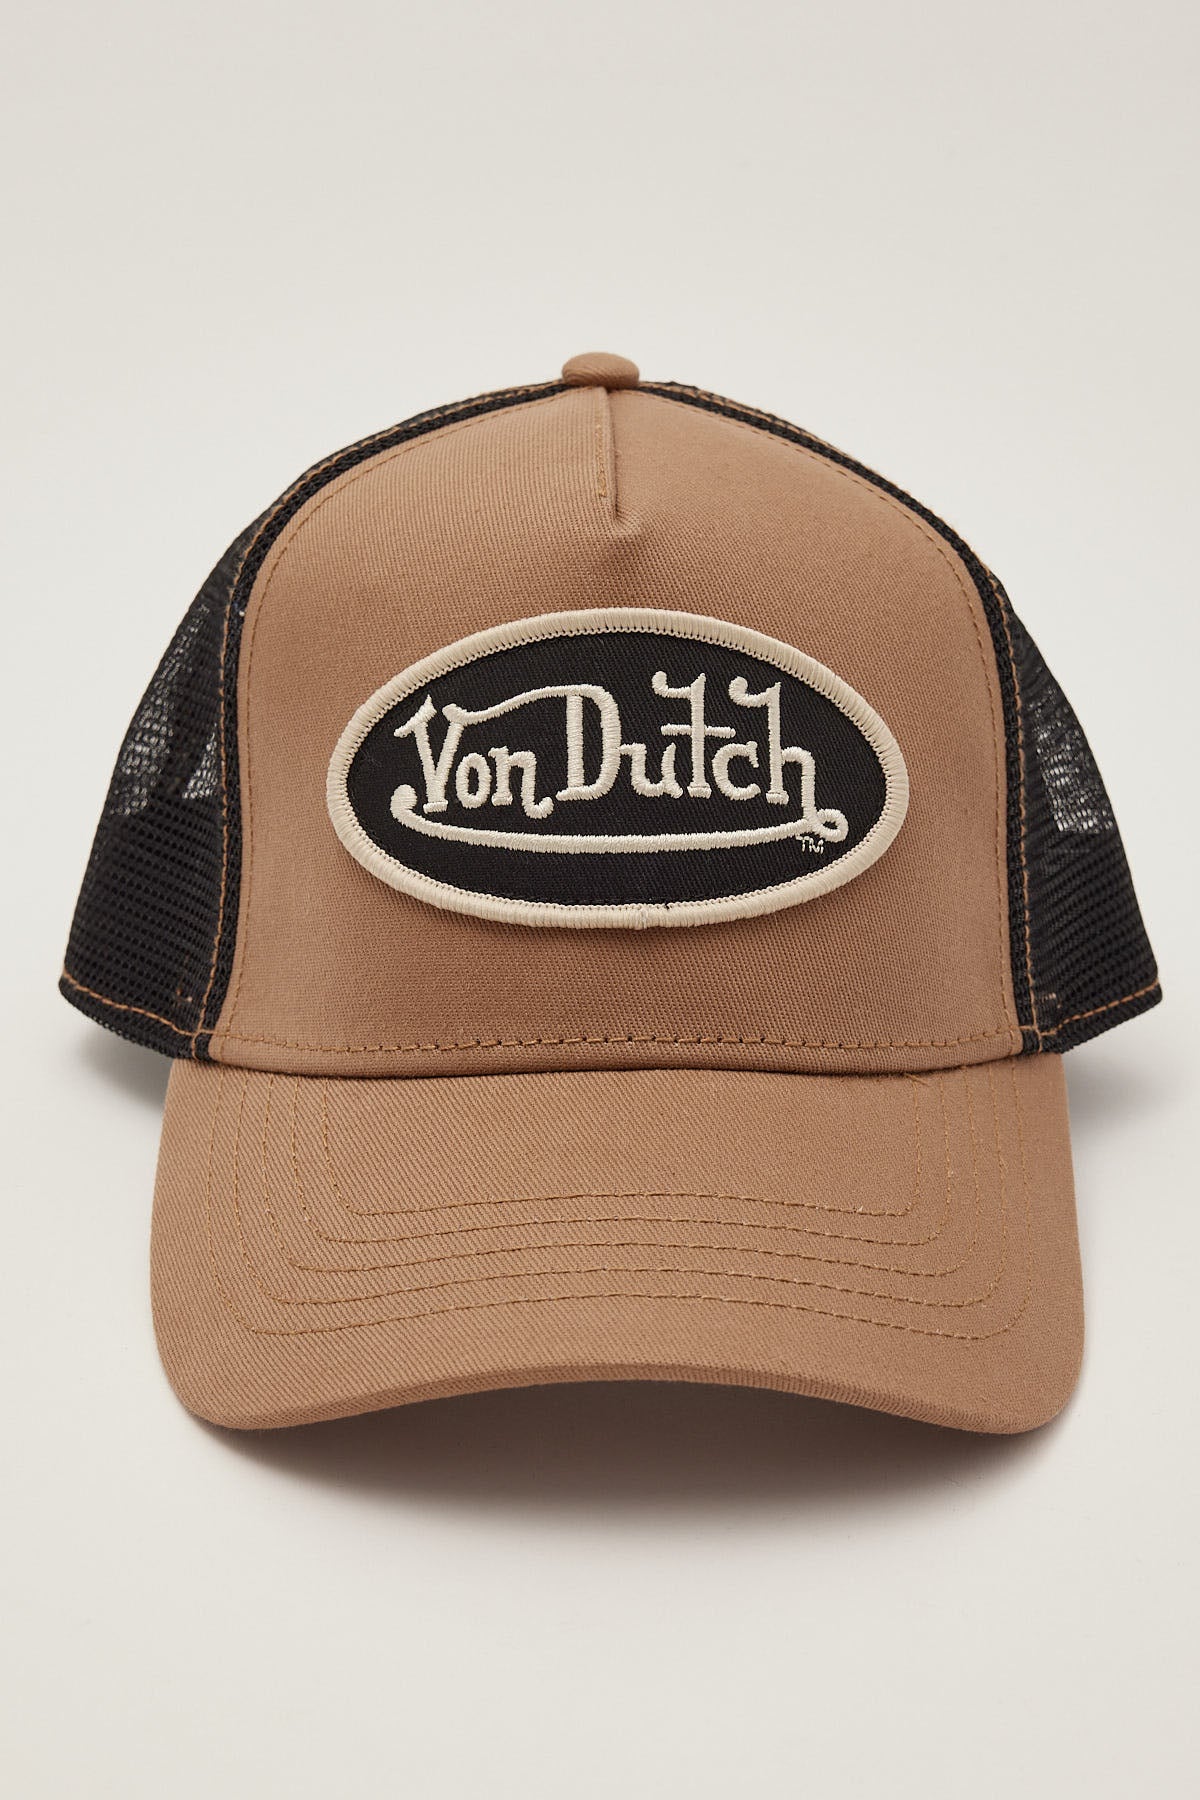 Von Dutch Taupe and Black Trucker Taupe/Black